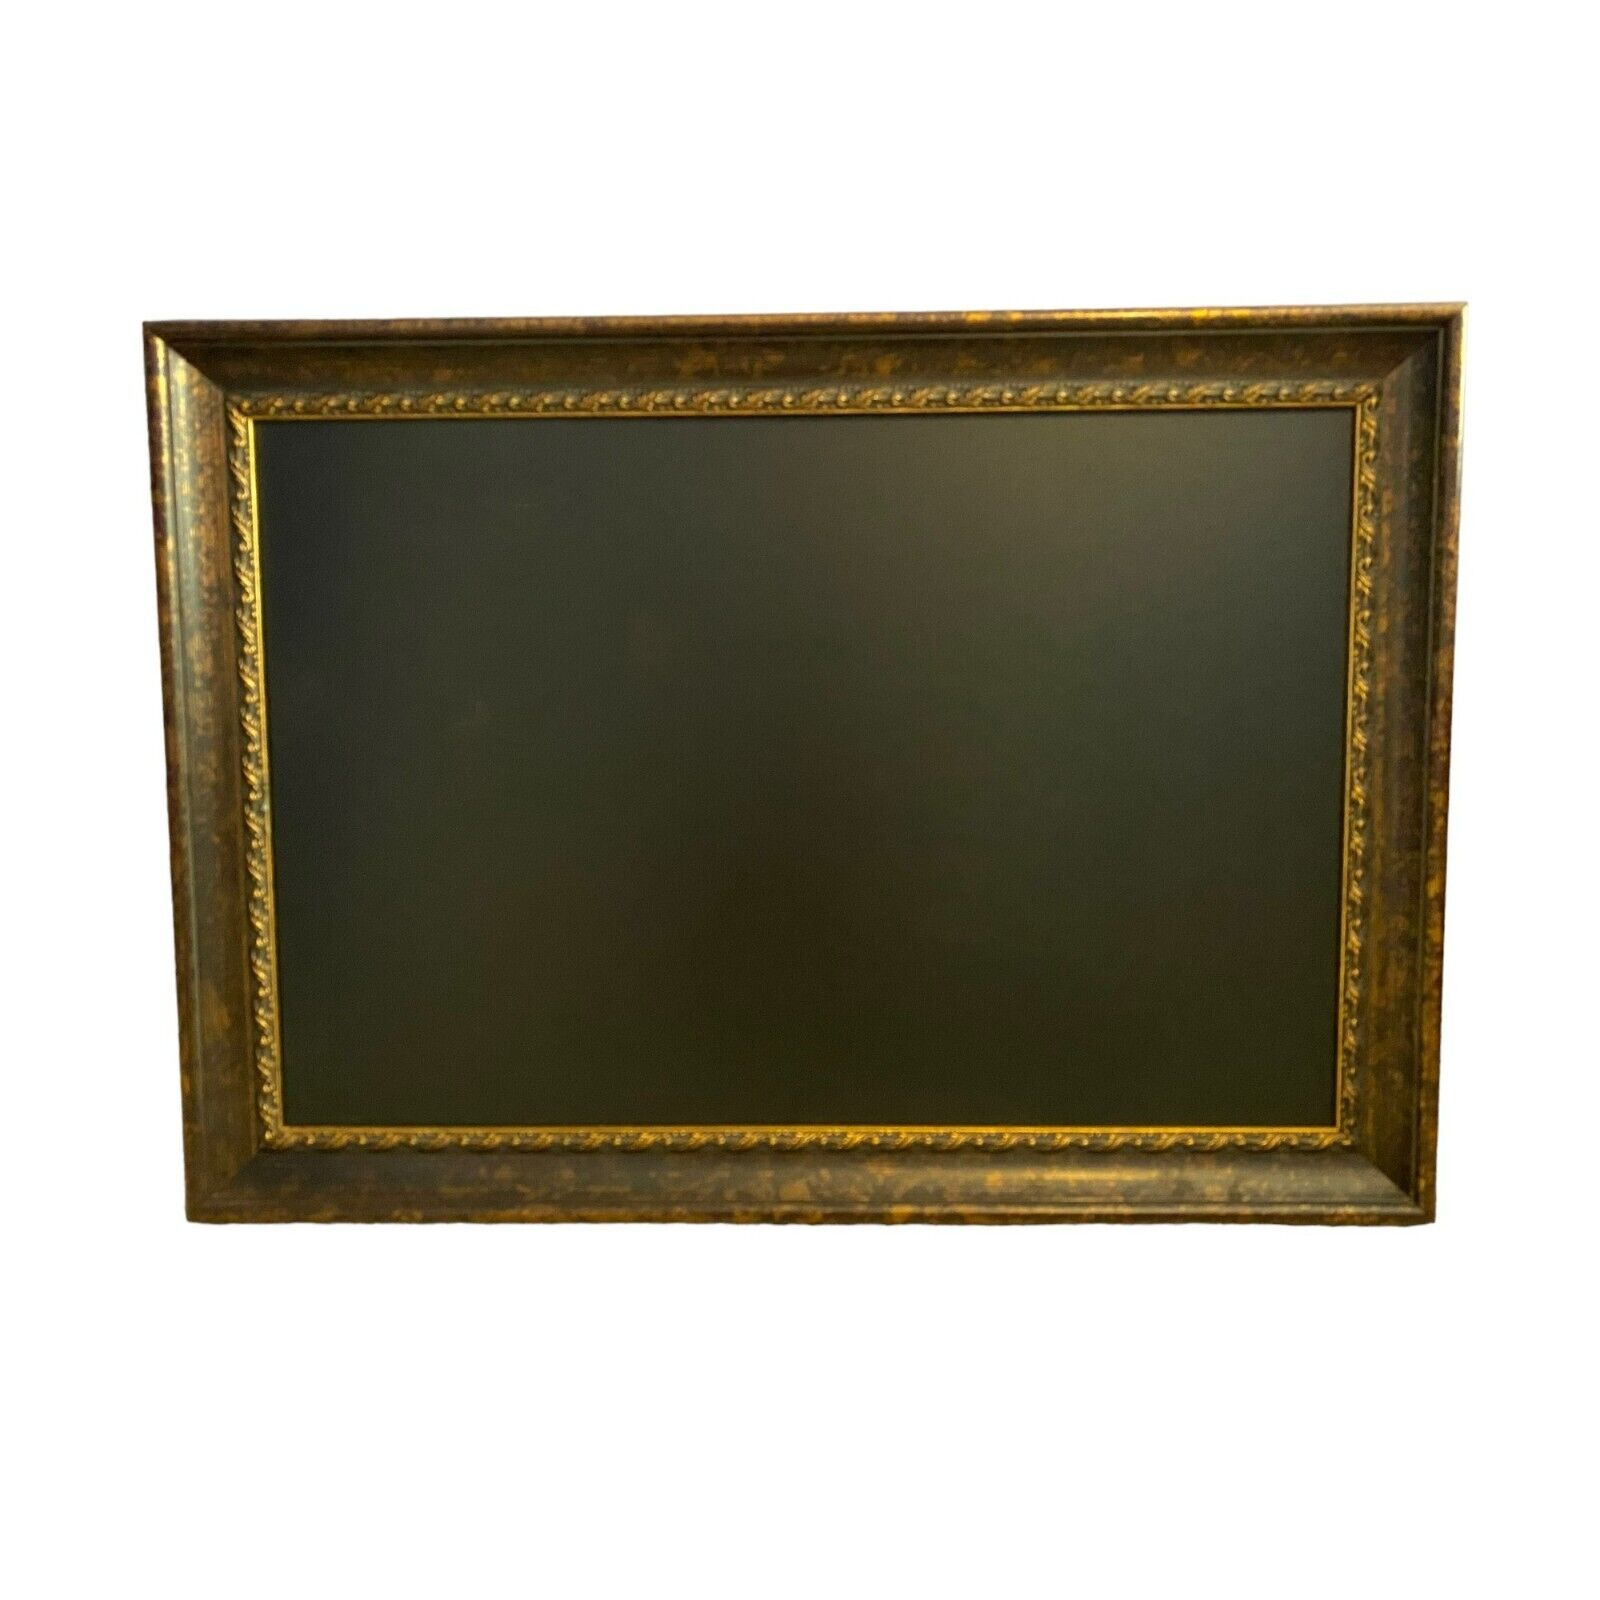 Large Ornate Frame 24x36 Chalkboard / Whiteboard